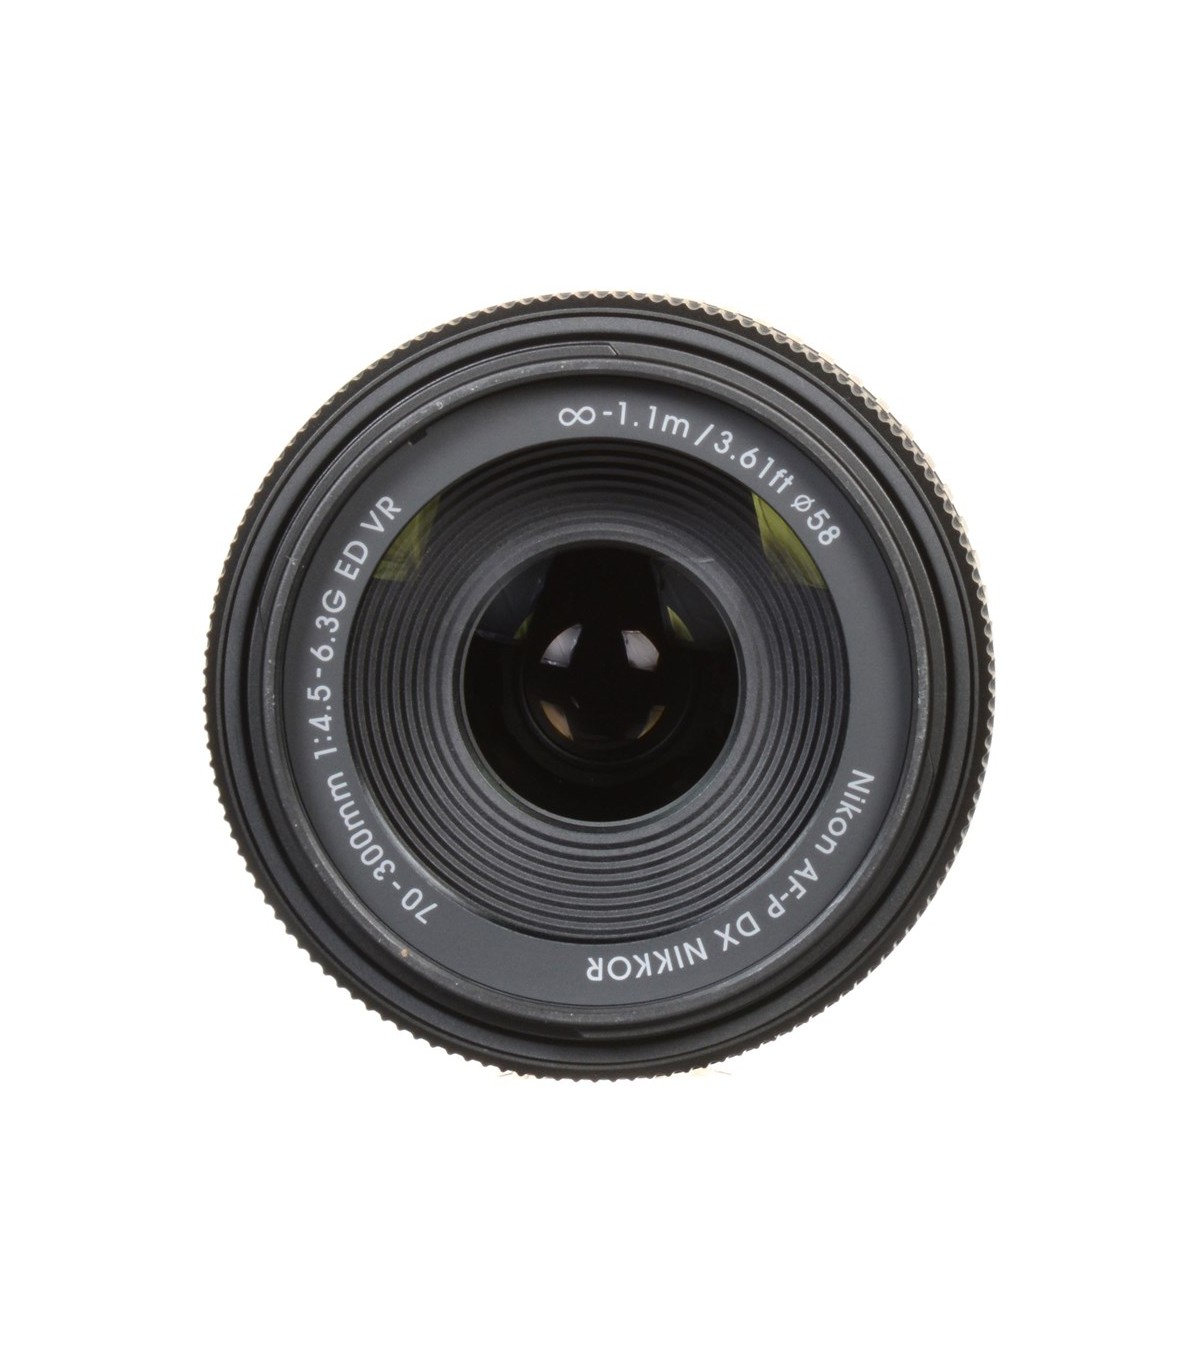 Nikon Lens Af-P Dx Nikkor 70-300mm F/4.5-6.3g Ed עדשה ניקון - יבואן רשמי